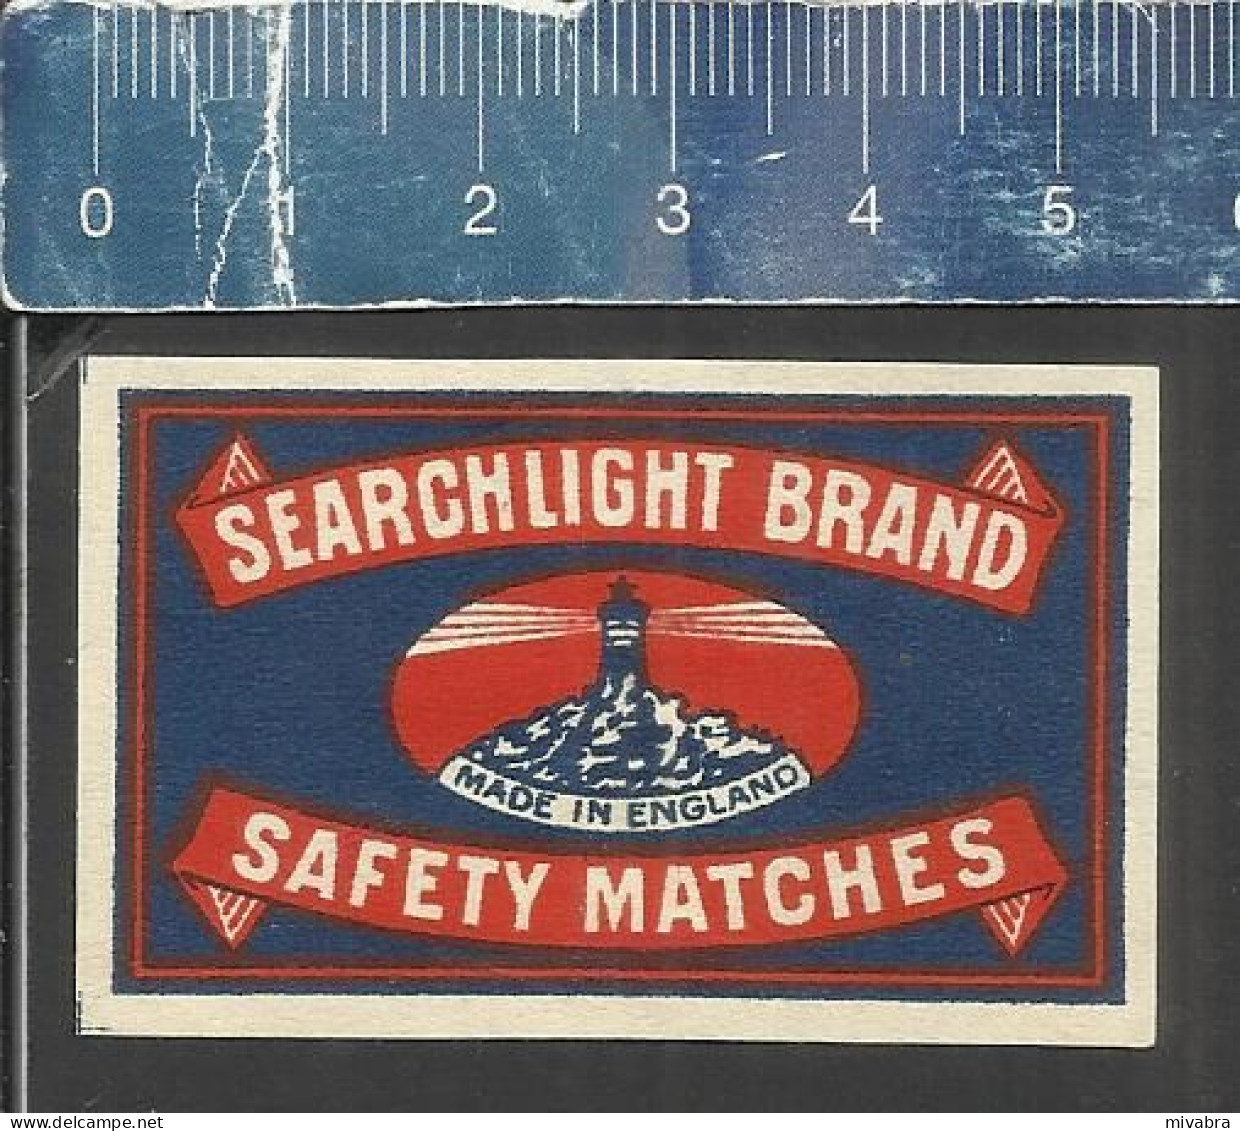 SEARCHLIGHT BRAND - OLD VINTAGE MATCHBOX LABEL ENGLAND - Matchbox Labels